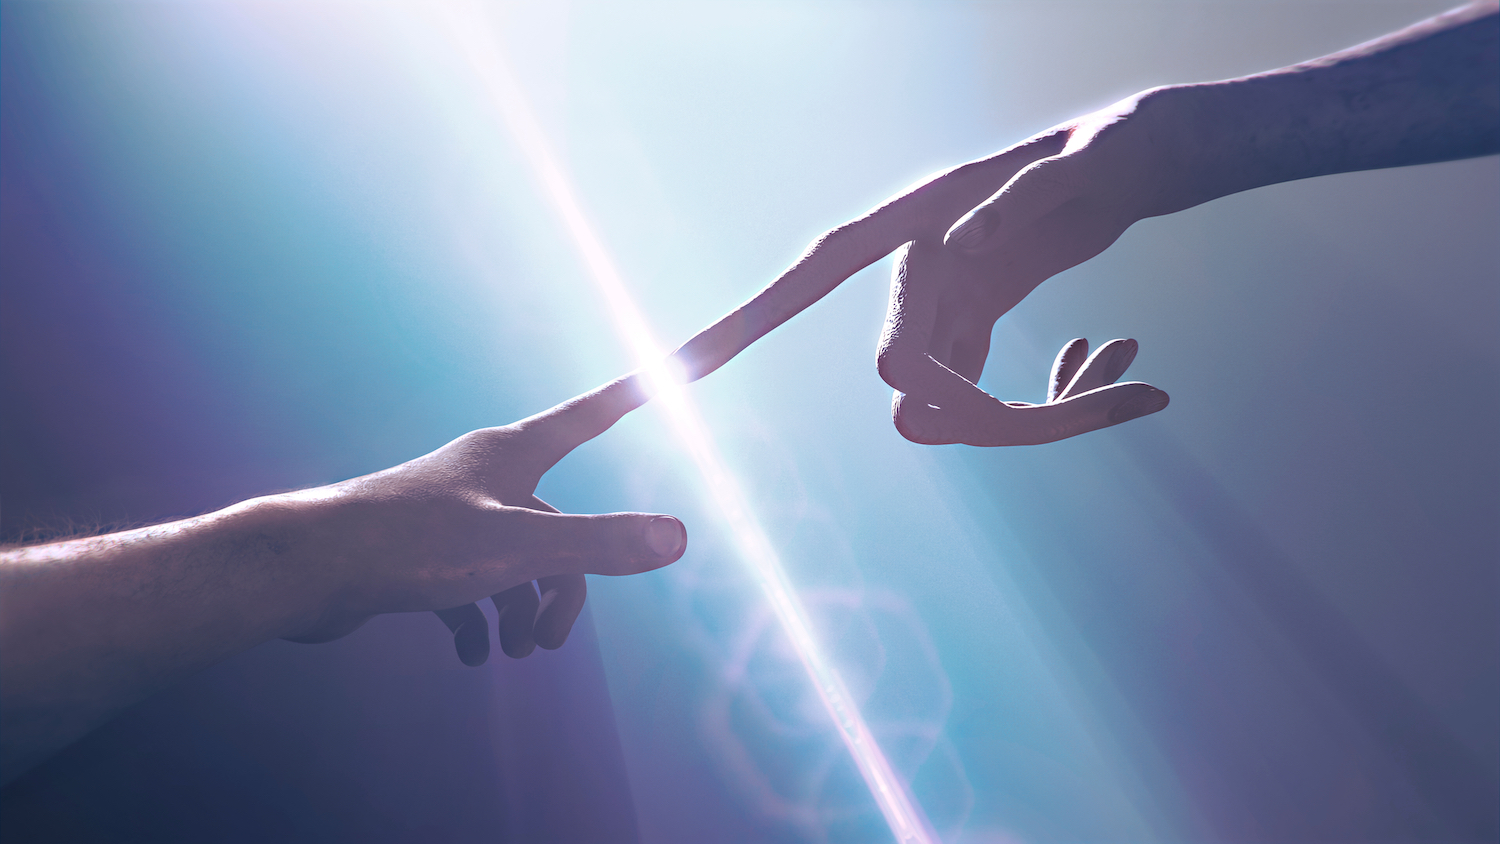 Izvanzemaljska ruka u dodiru sa ljudskom rukom. Shutterstock.